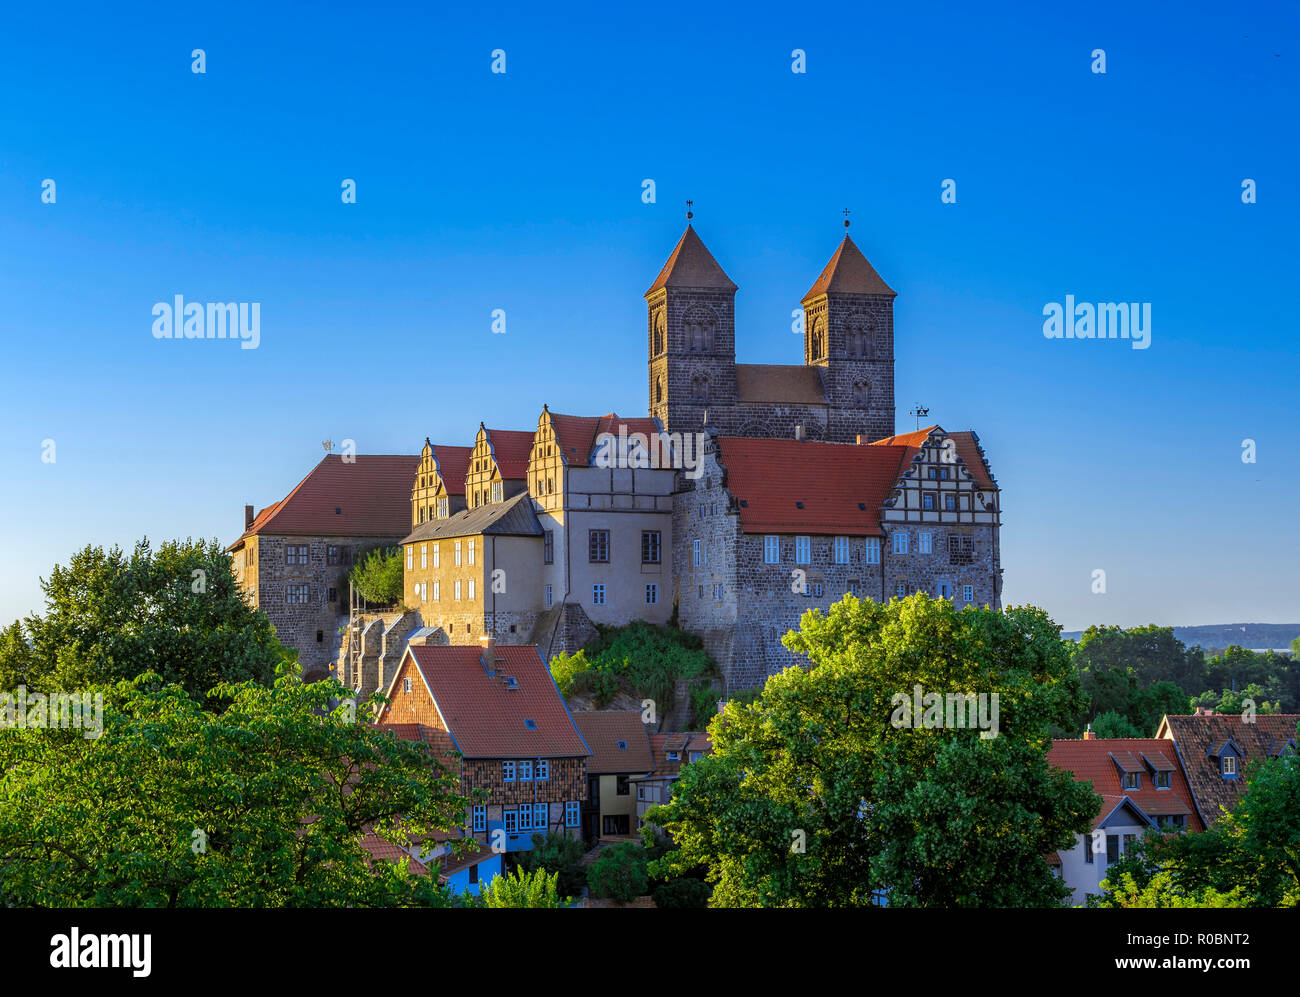 Castle Hill avec collégiale de Saint Servatius, UNESCO World Heritage Site, Quedlinburg, Saxe-Anhalt, Allemagne, Europe Banque D'Images